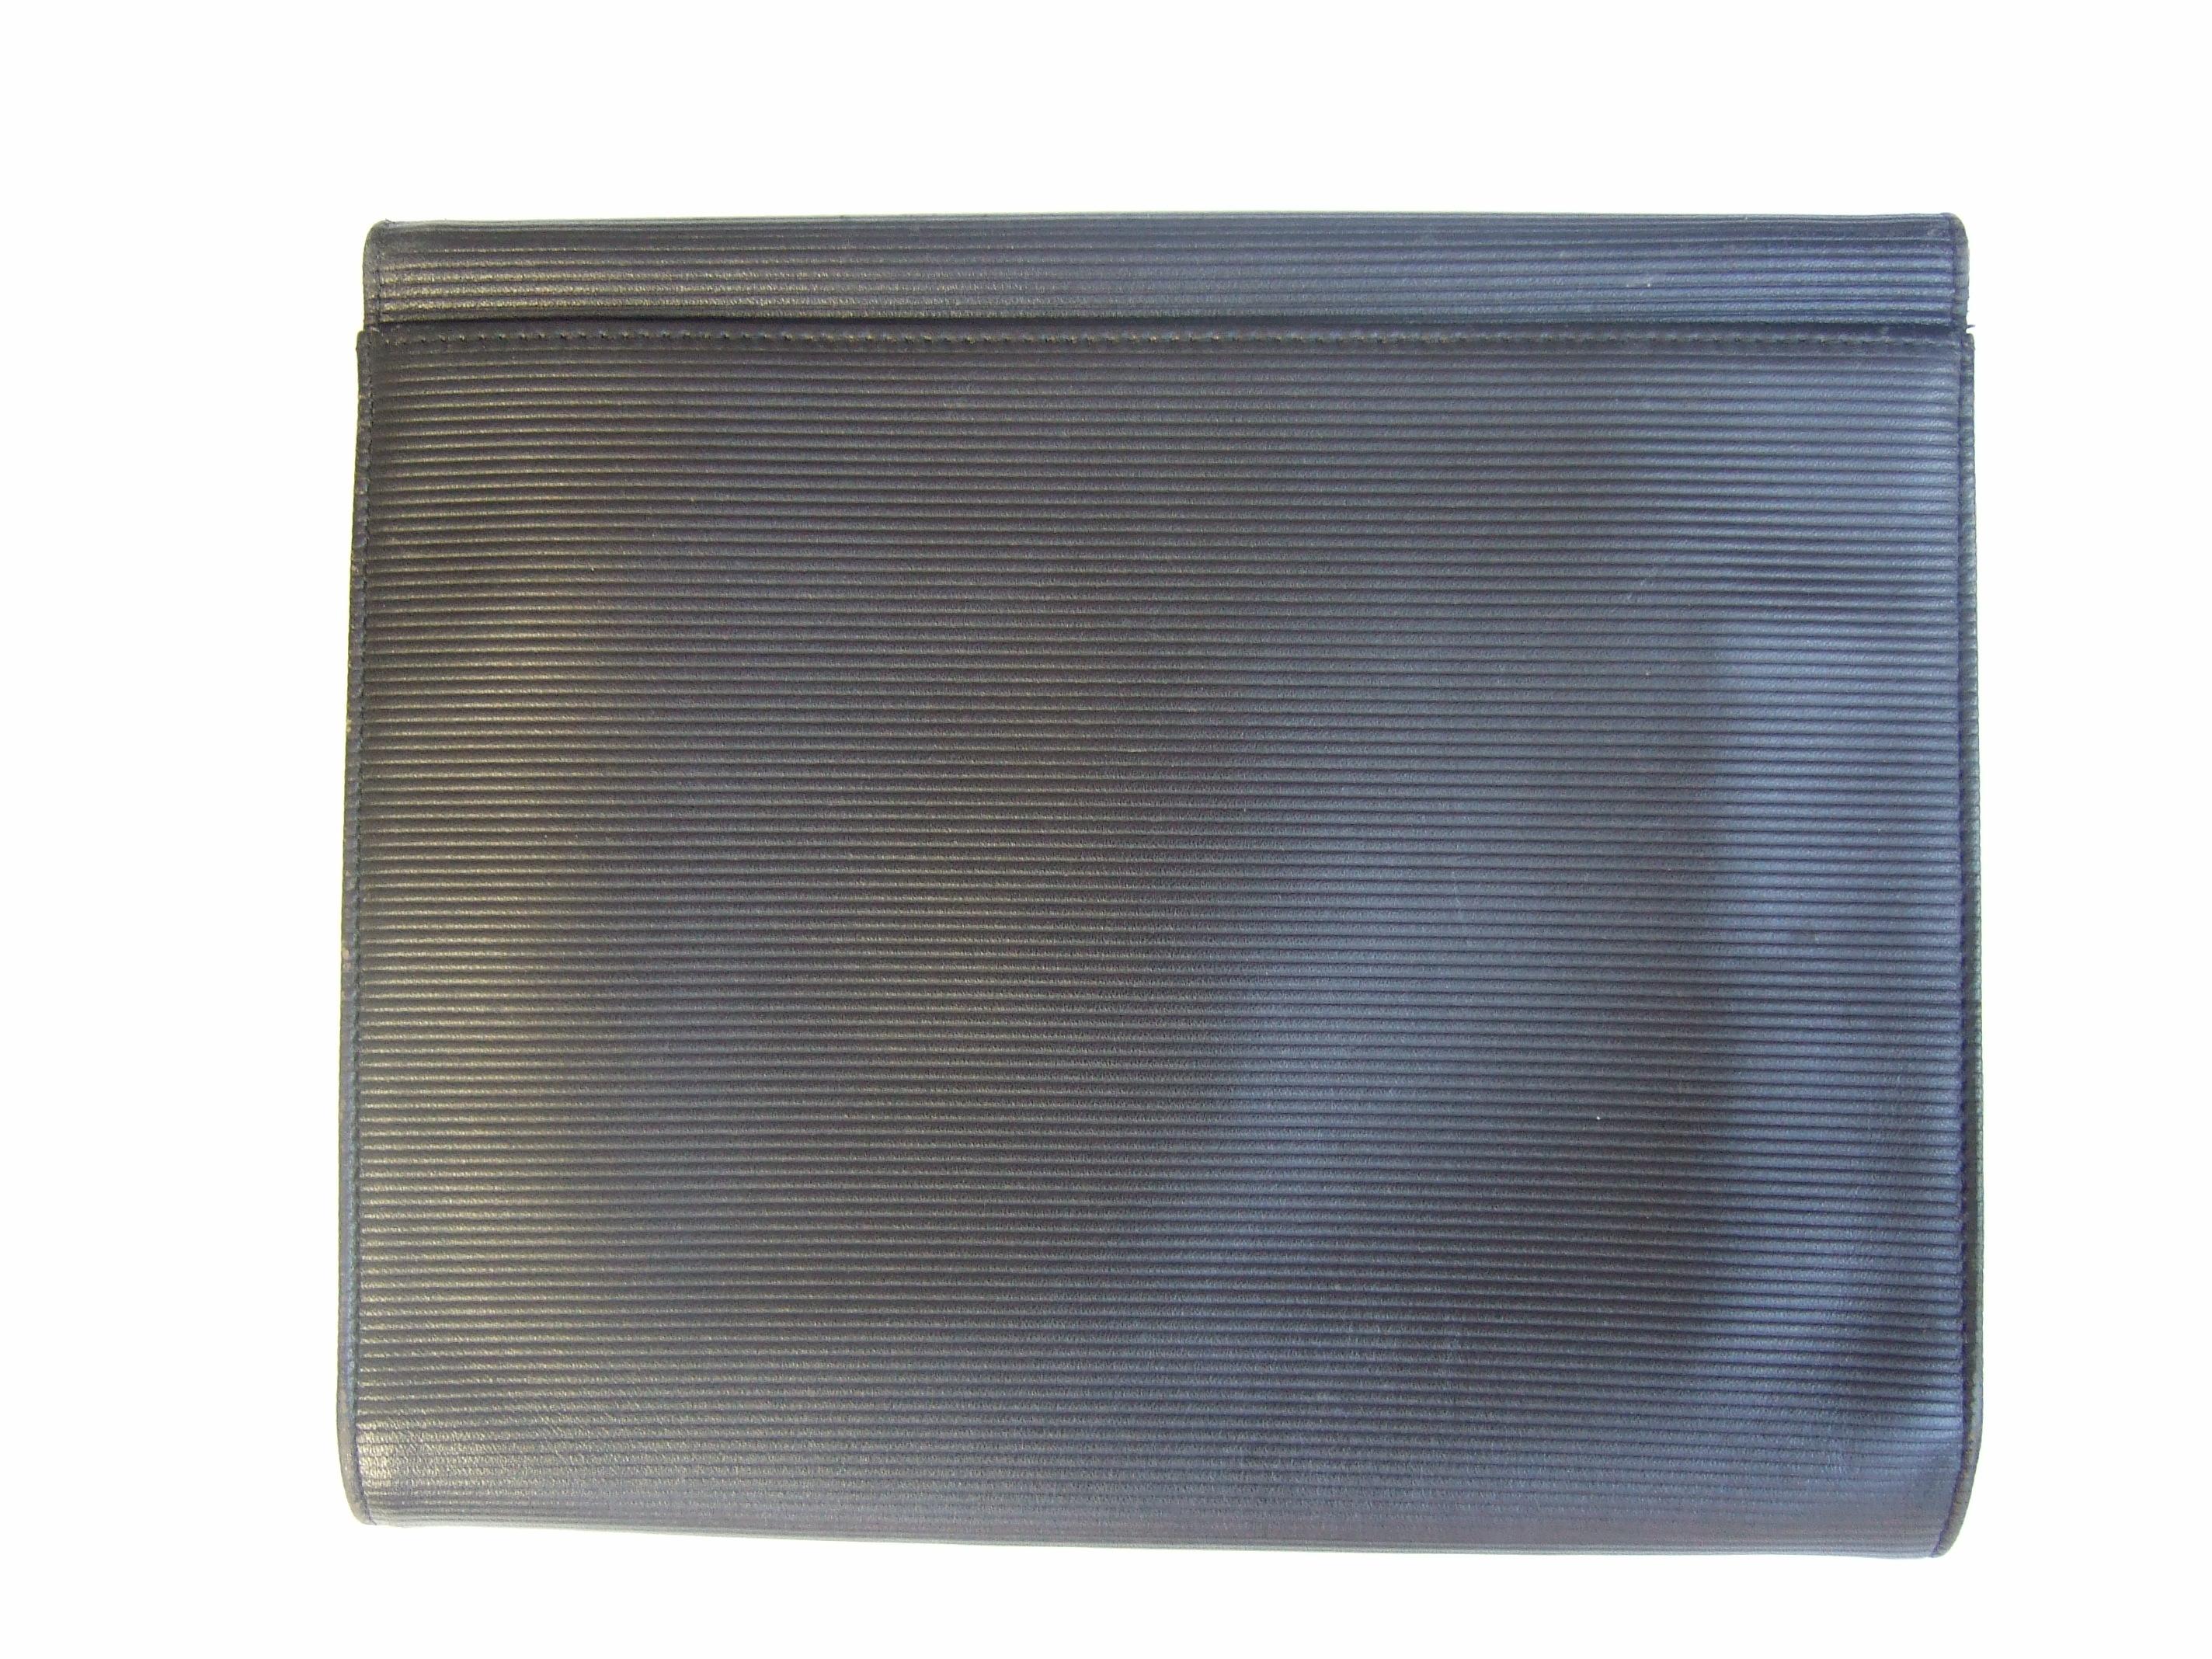 Yves Saint Laurent Chic Black Leather Versatile Clutch - Shoulder Bag c 1980s 8